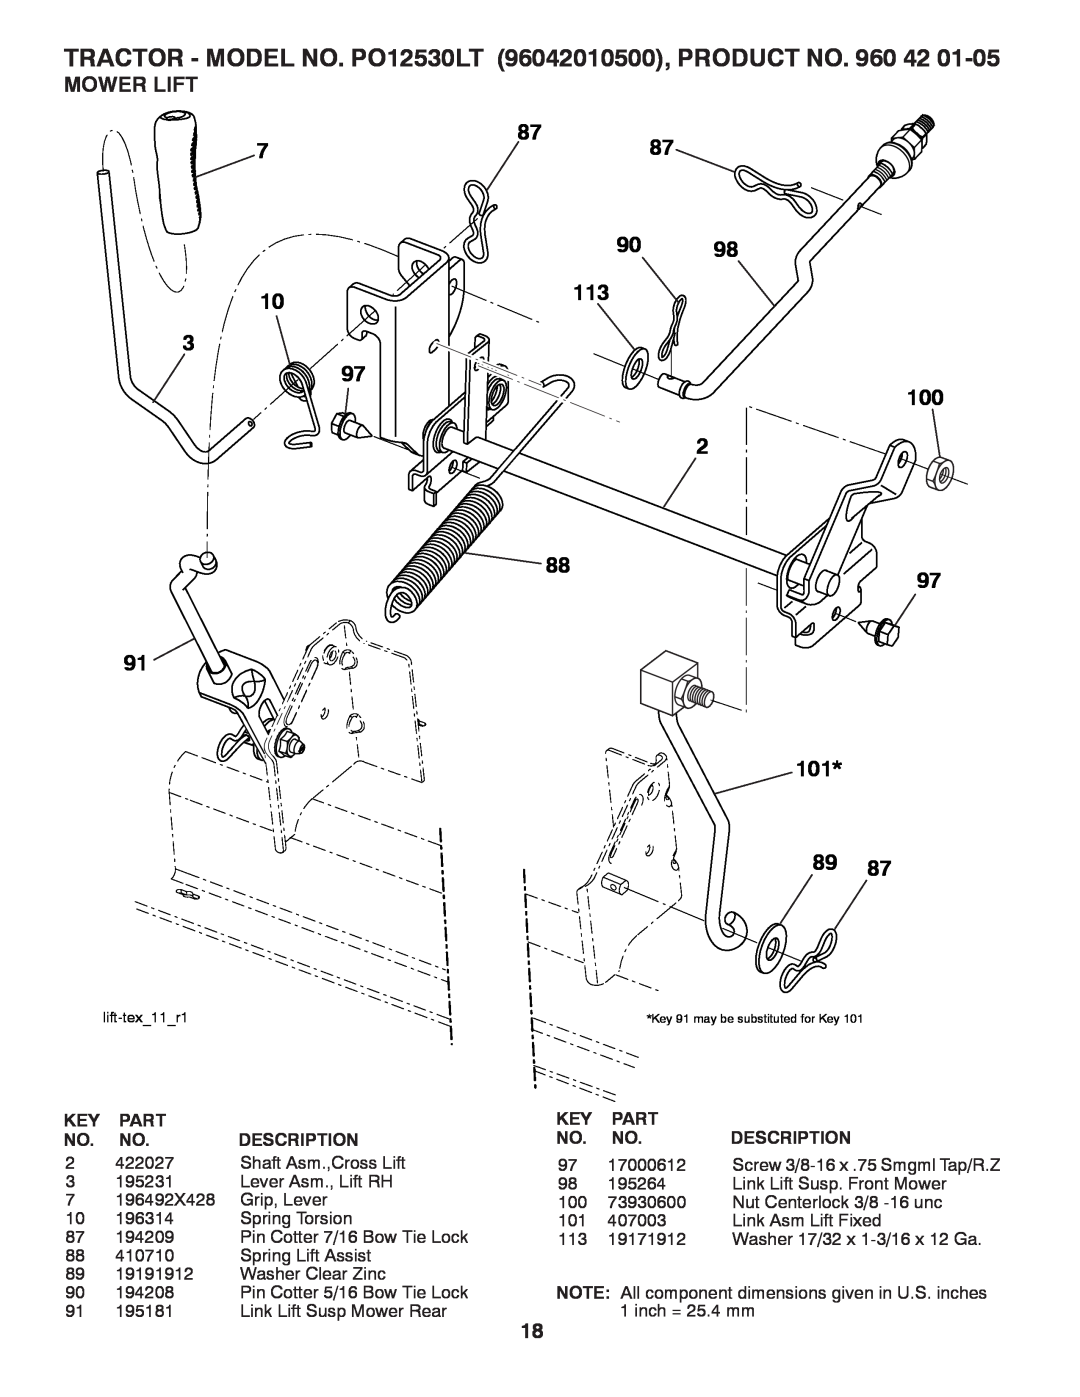 Poulan PO12530LT manual Mower Lift, 87 90 113, 100 97, 101, Part, Description 